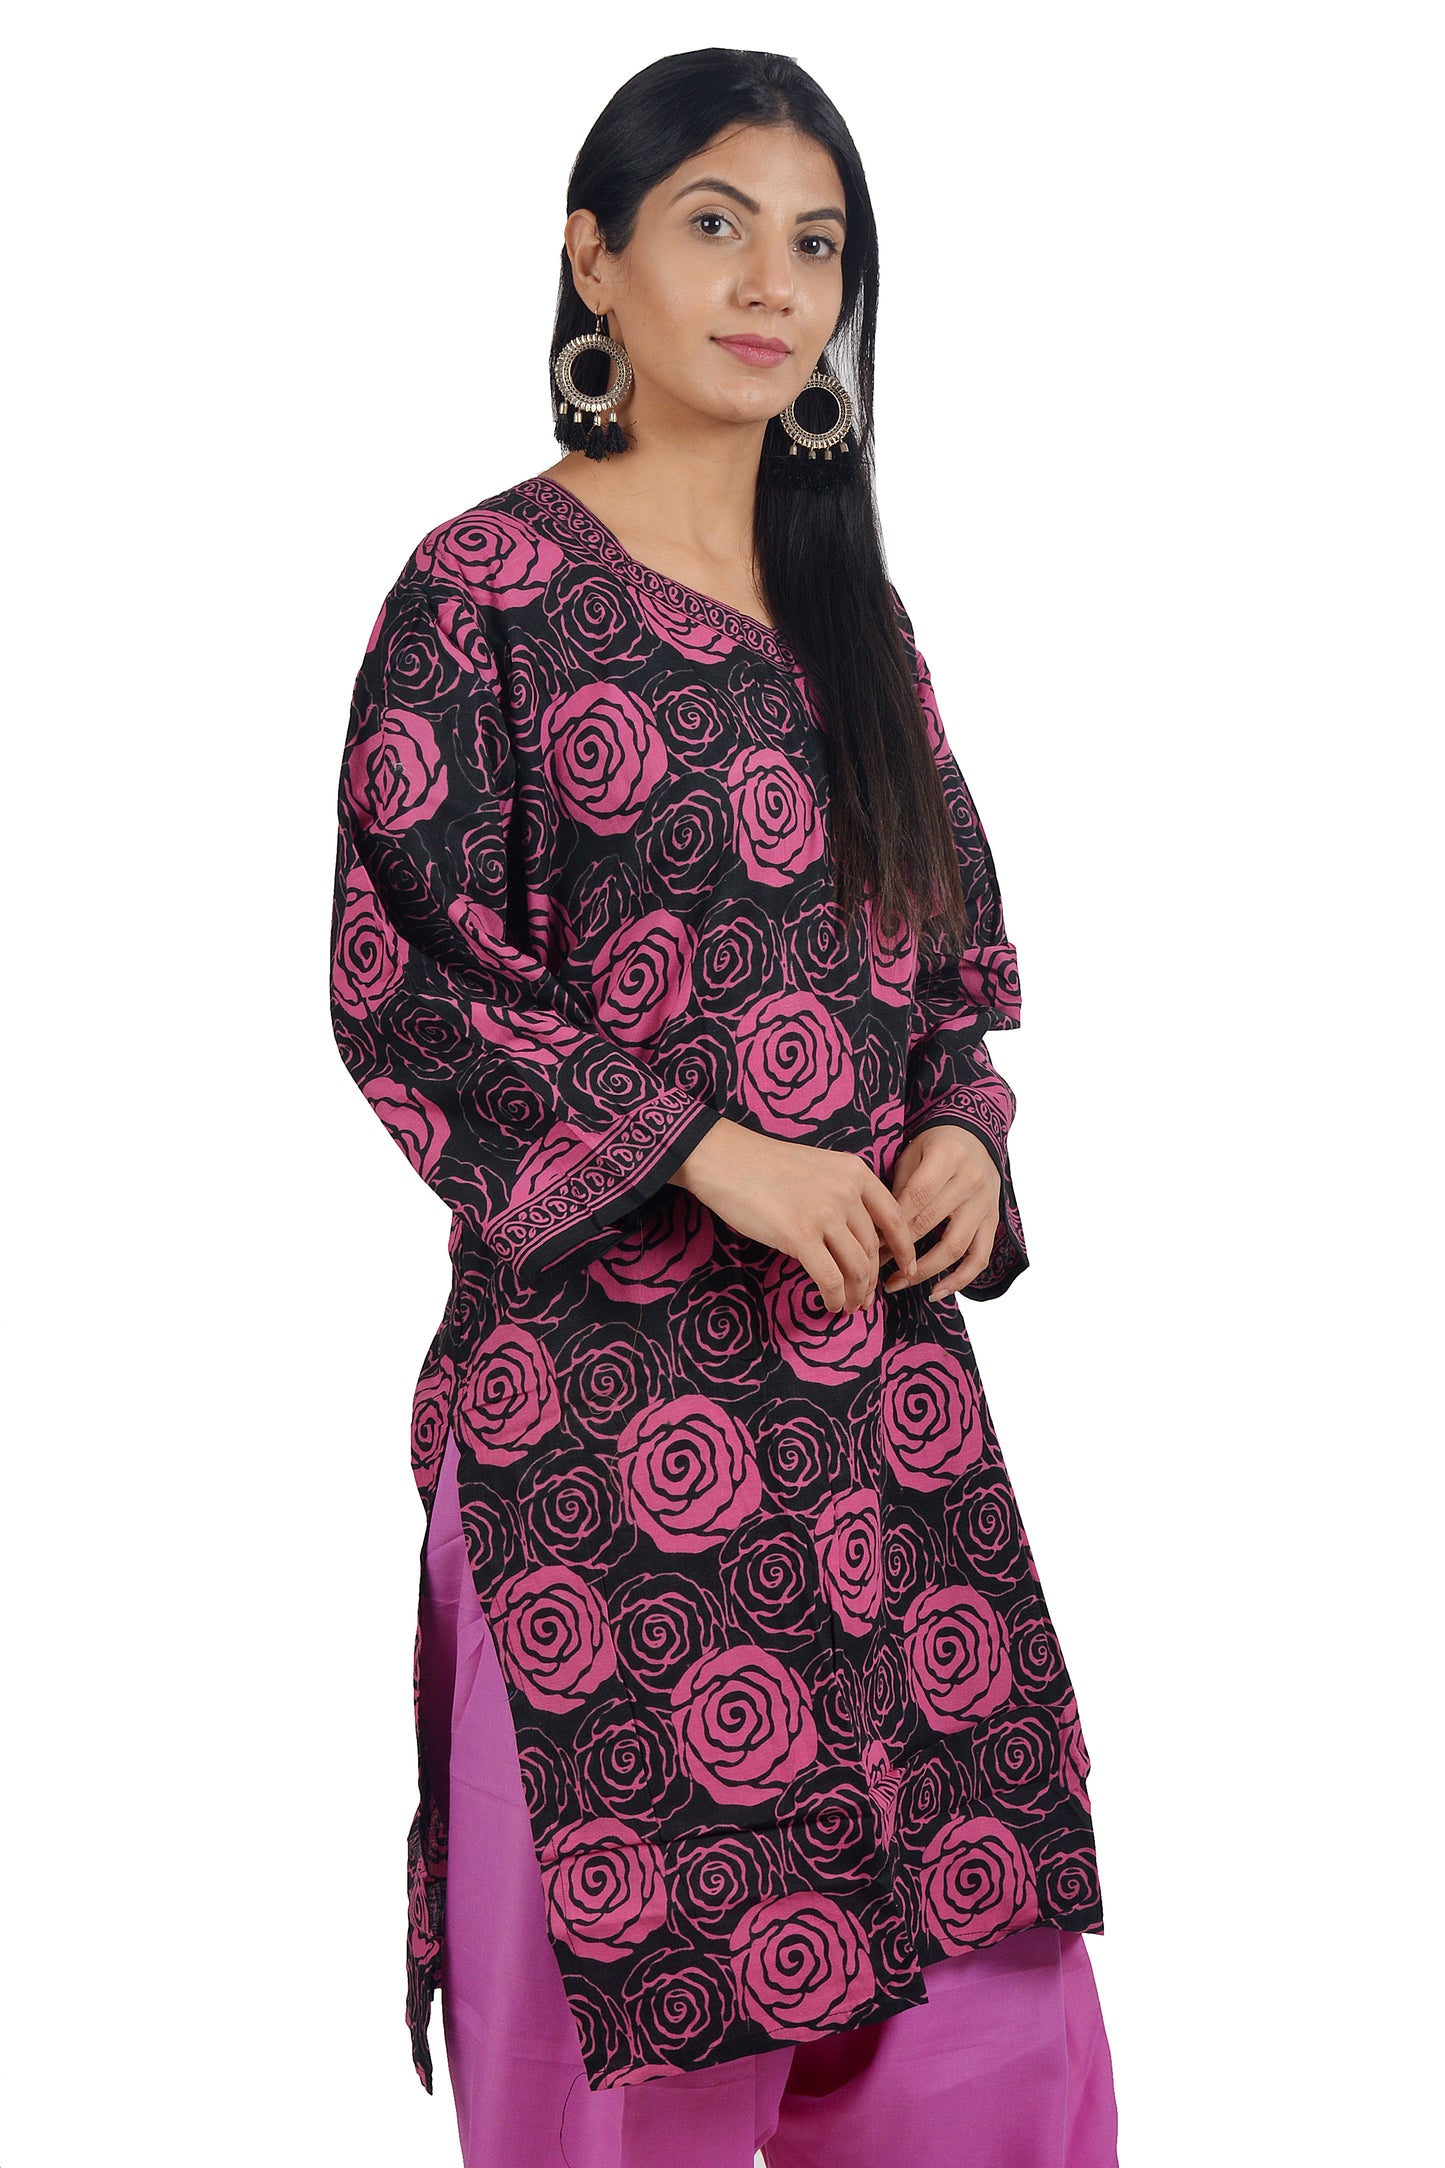 Black Floral Print Cotton Salwar kameez  Plus Size ,52